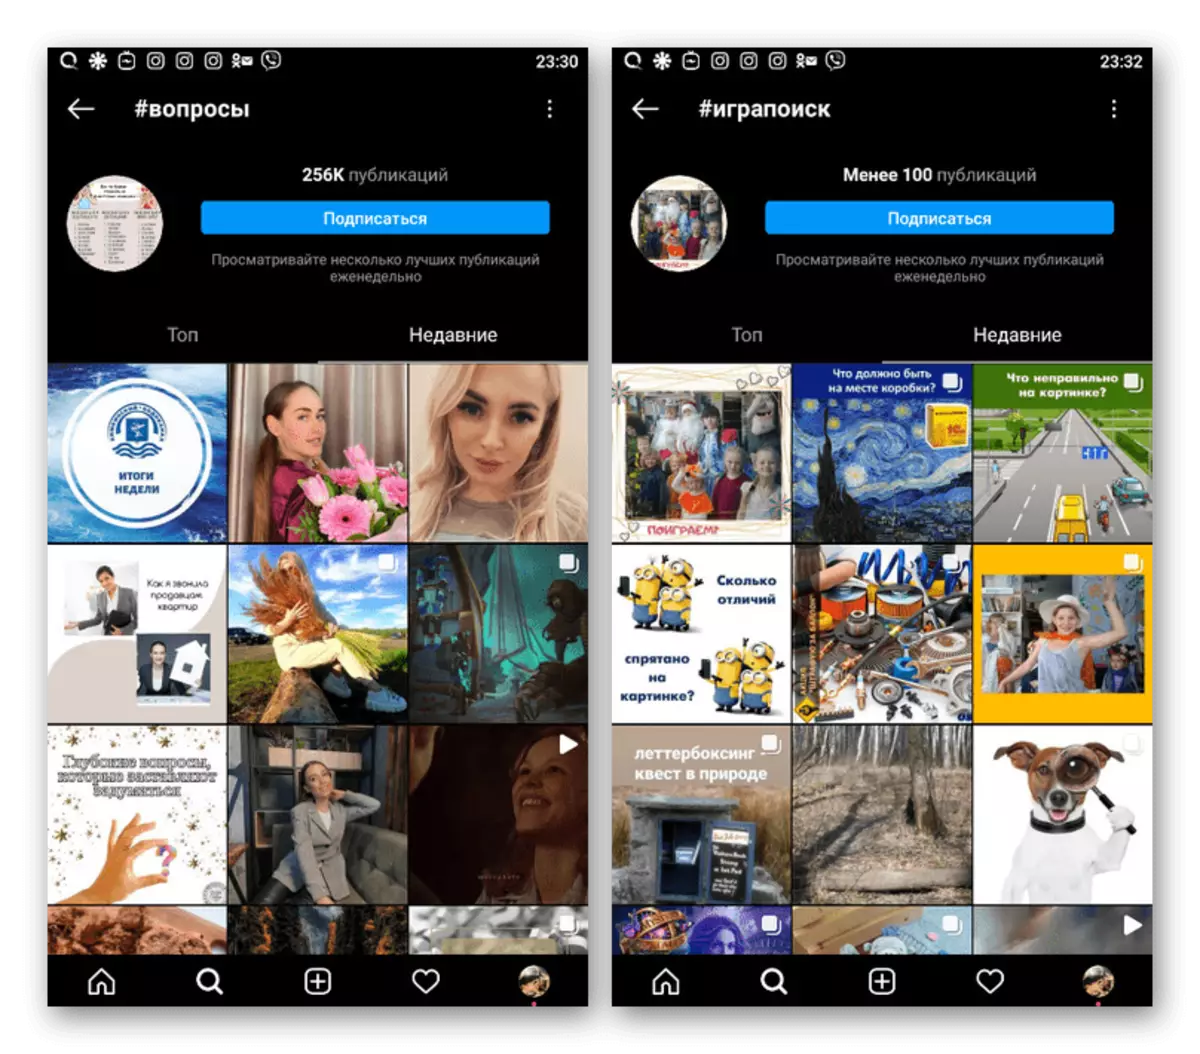 Instagram Mobile tətbiqi oyun əsərlərin nümunəsi